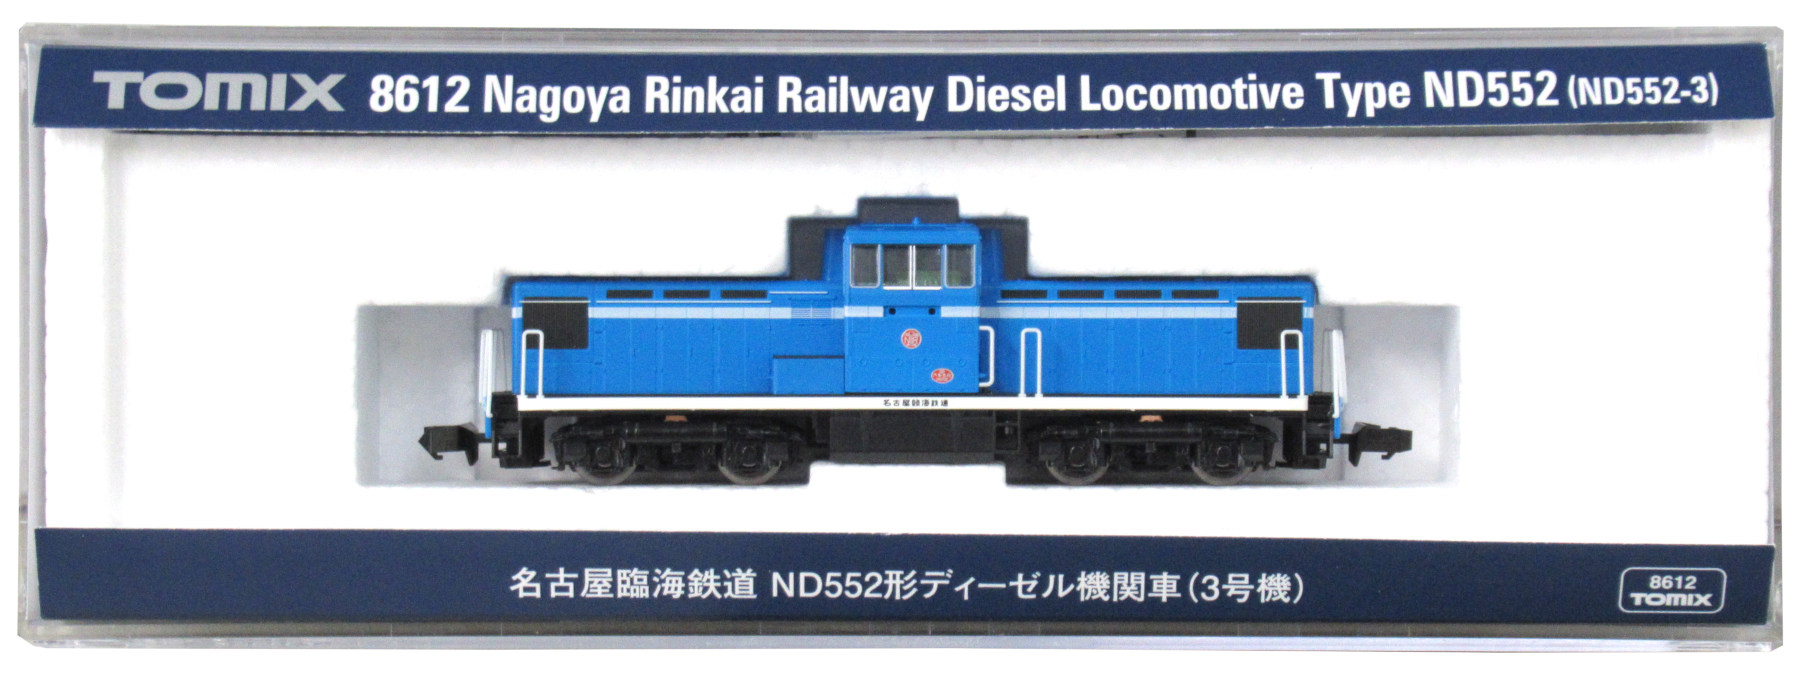 公式]鉄道模型(8612名古屋臨海鉄道 ND552形ディーゼル機関車(3号機